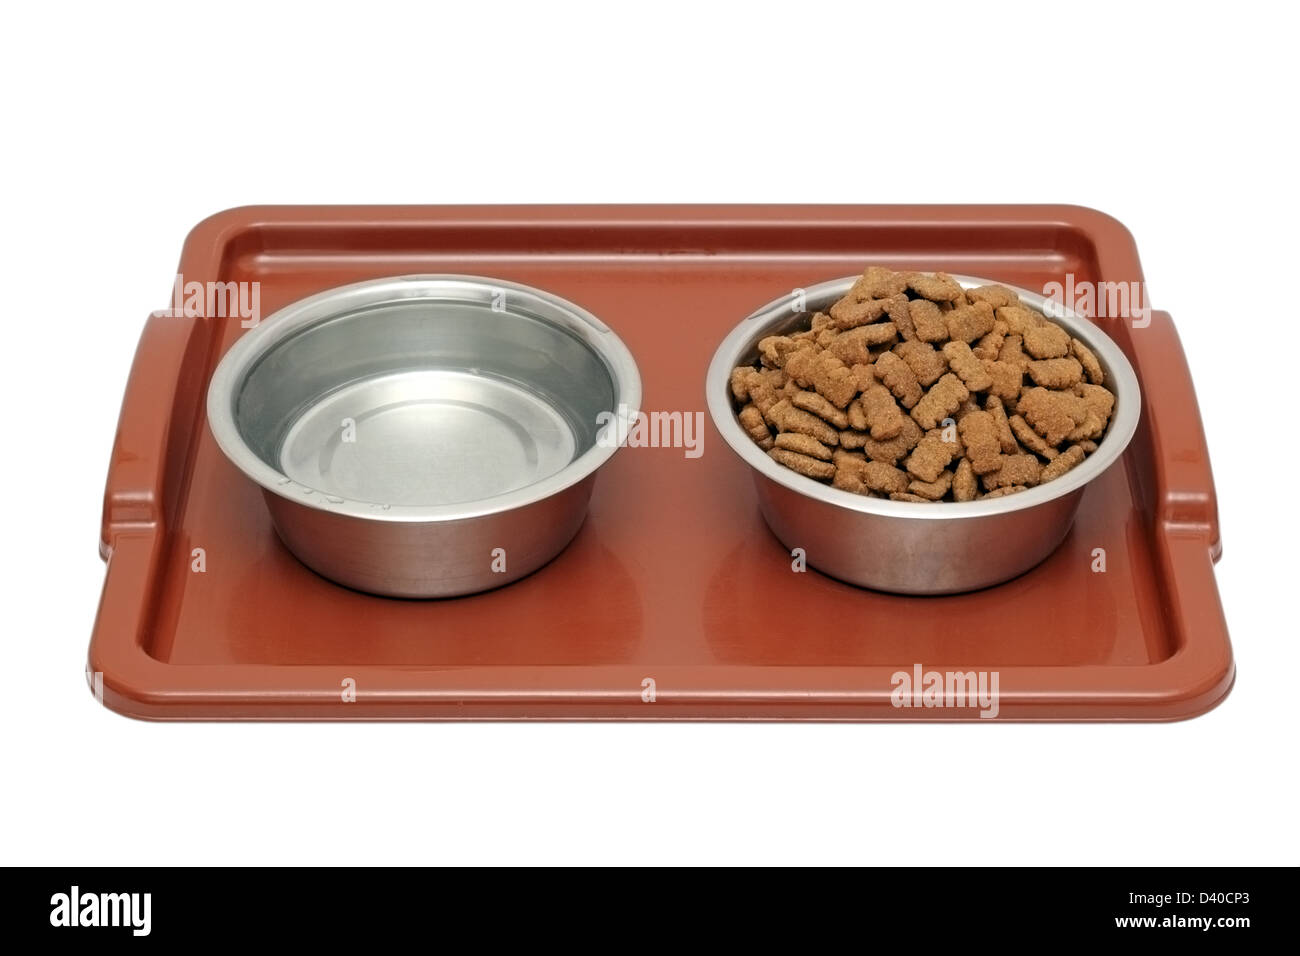 Hund gibt es Frühstück - Hund Futter und Wasser auf einem braunen Kunststoff Plateau isoliert auf weißem Hintergrund Stockfoto